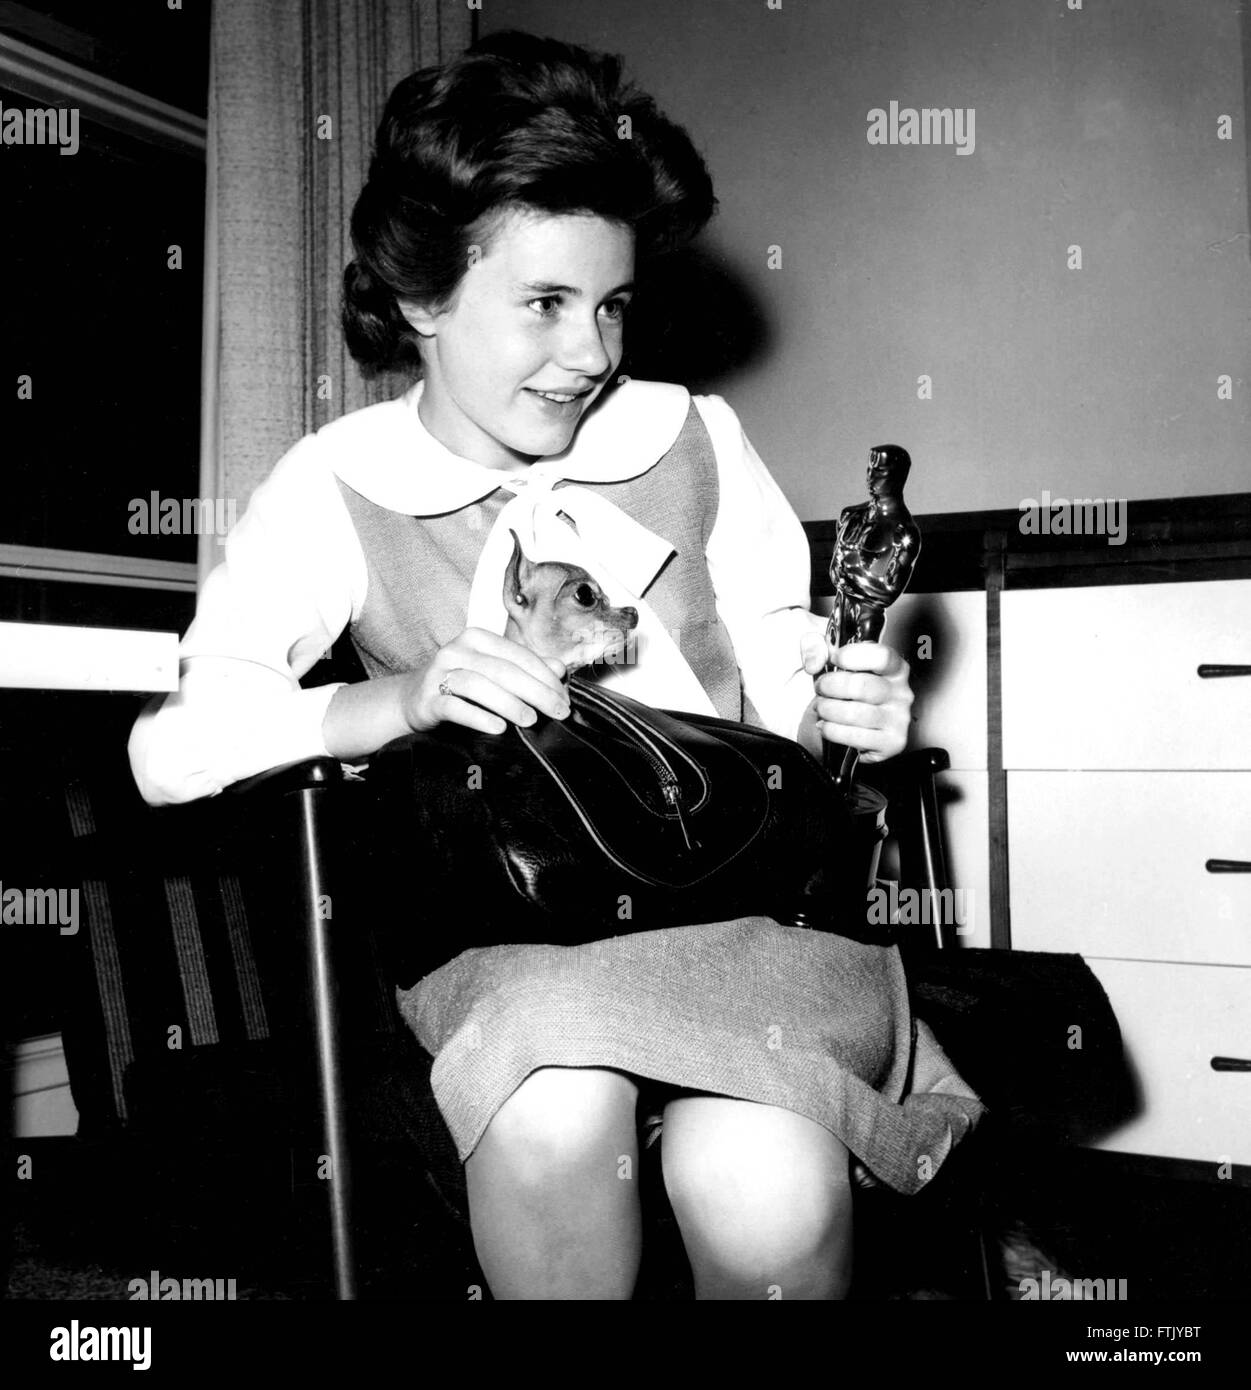 Datei. 29. März 2016. PATTY DUKE, (14. Dezember 1946 - 29. März 2016) war eine US-amerikanische Schauspielerin für Bühne, Film und Fernsehen. Herzog starb 69 der Sepsis aus einem geplatzten Darm. Herzog gewann einen Oscar im Jahr 1963 für ihre Darstellung der Helen Keller in "The Miracle Worker", eine Rolle spielte sie auch um Beifall am Broadway. Sie wurde auch für Rollen im "Valley of the Dolls" bekannt "My Sweet Charlie" und "Ich, Natalie," sowie für die "The Patty Duke Show," ausgestrahlt, die von 1963 bis 1966. Im Bild: Patty Duke. 1963 Academy Award Oscar Statuette © Globe Fotos/ZUMAPRESS. © ZUMA Press, Inc./Alamy Liv Stockfoto